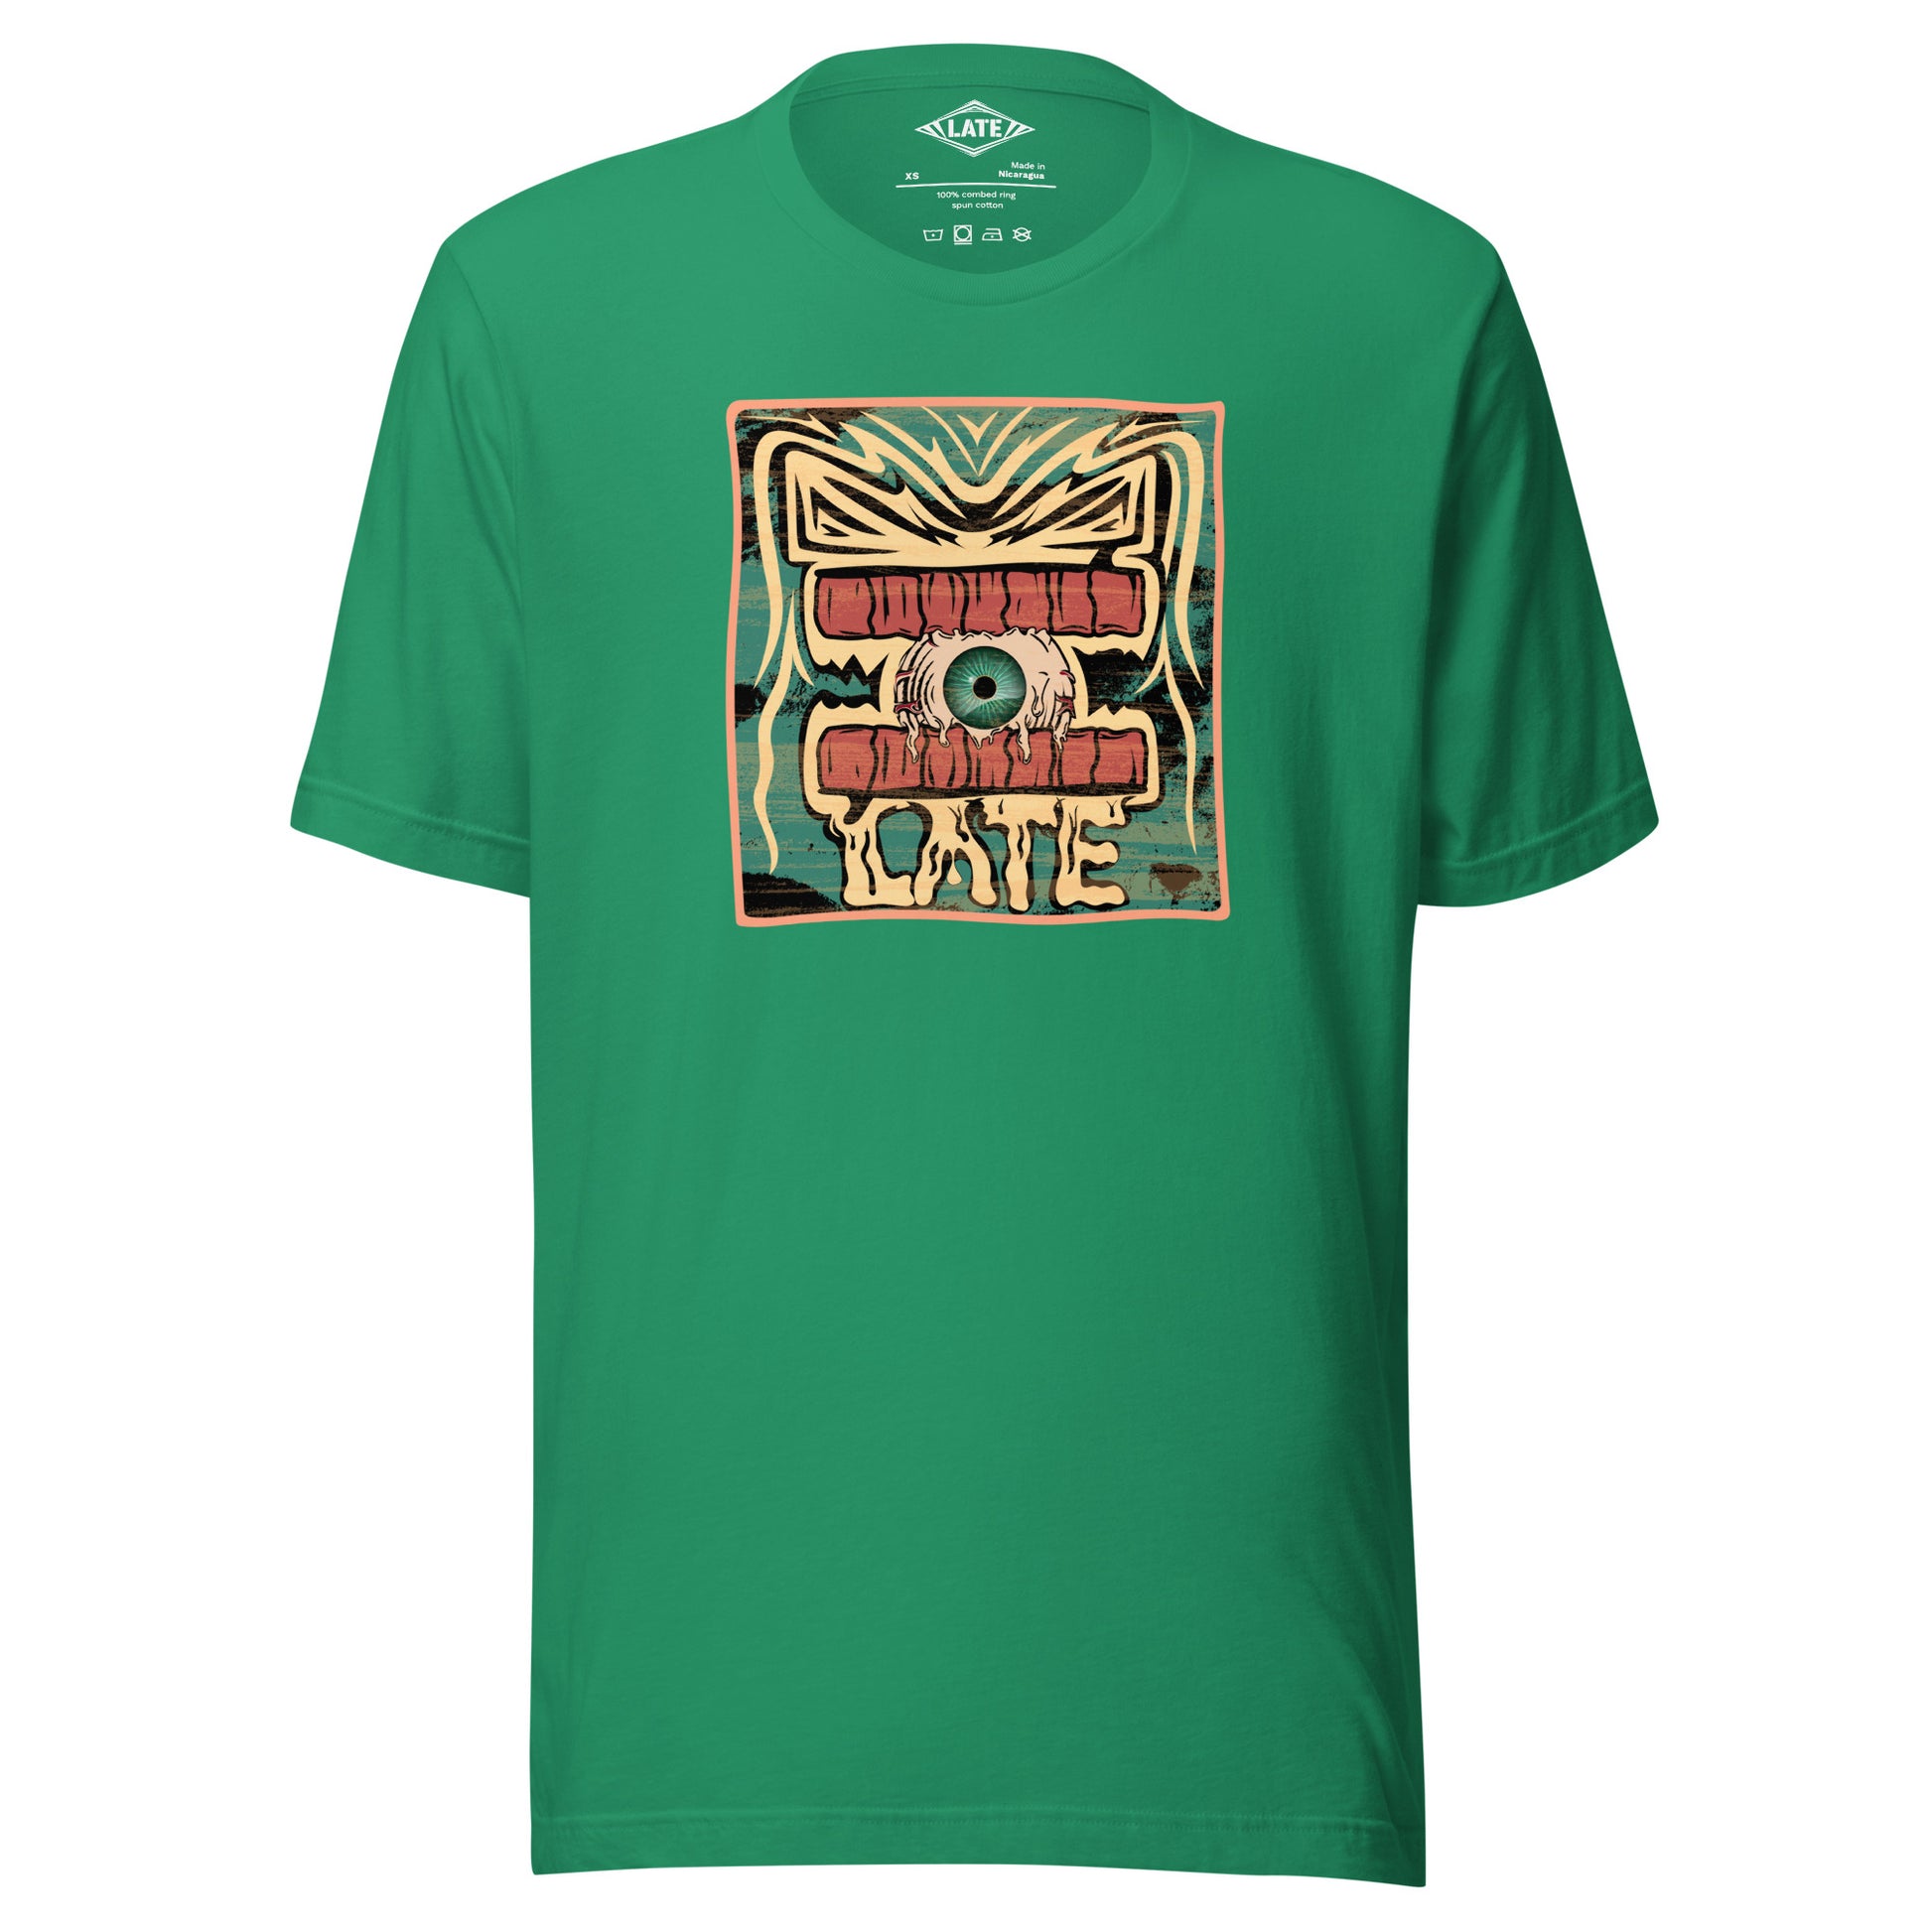 T-shirt rétro skateboarding, design couleur délavée, années 70,80, original dent et oeil skate, tee-shirt unisexe kelly vert